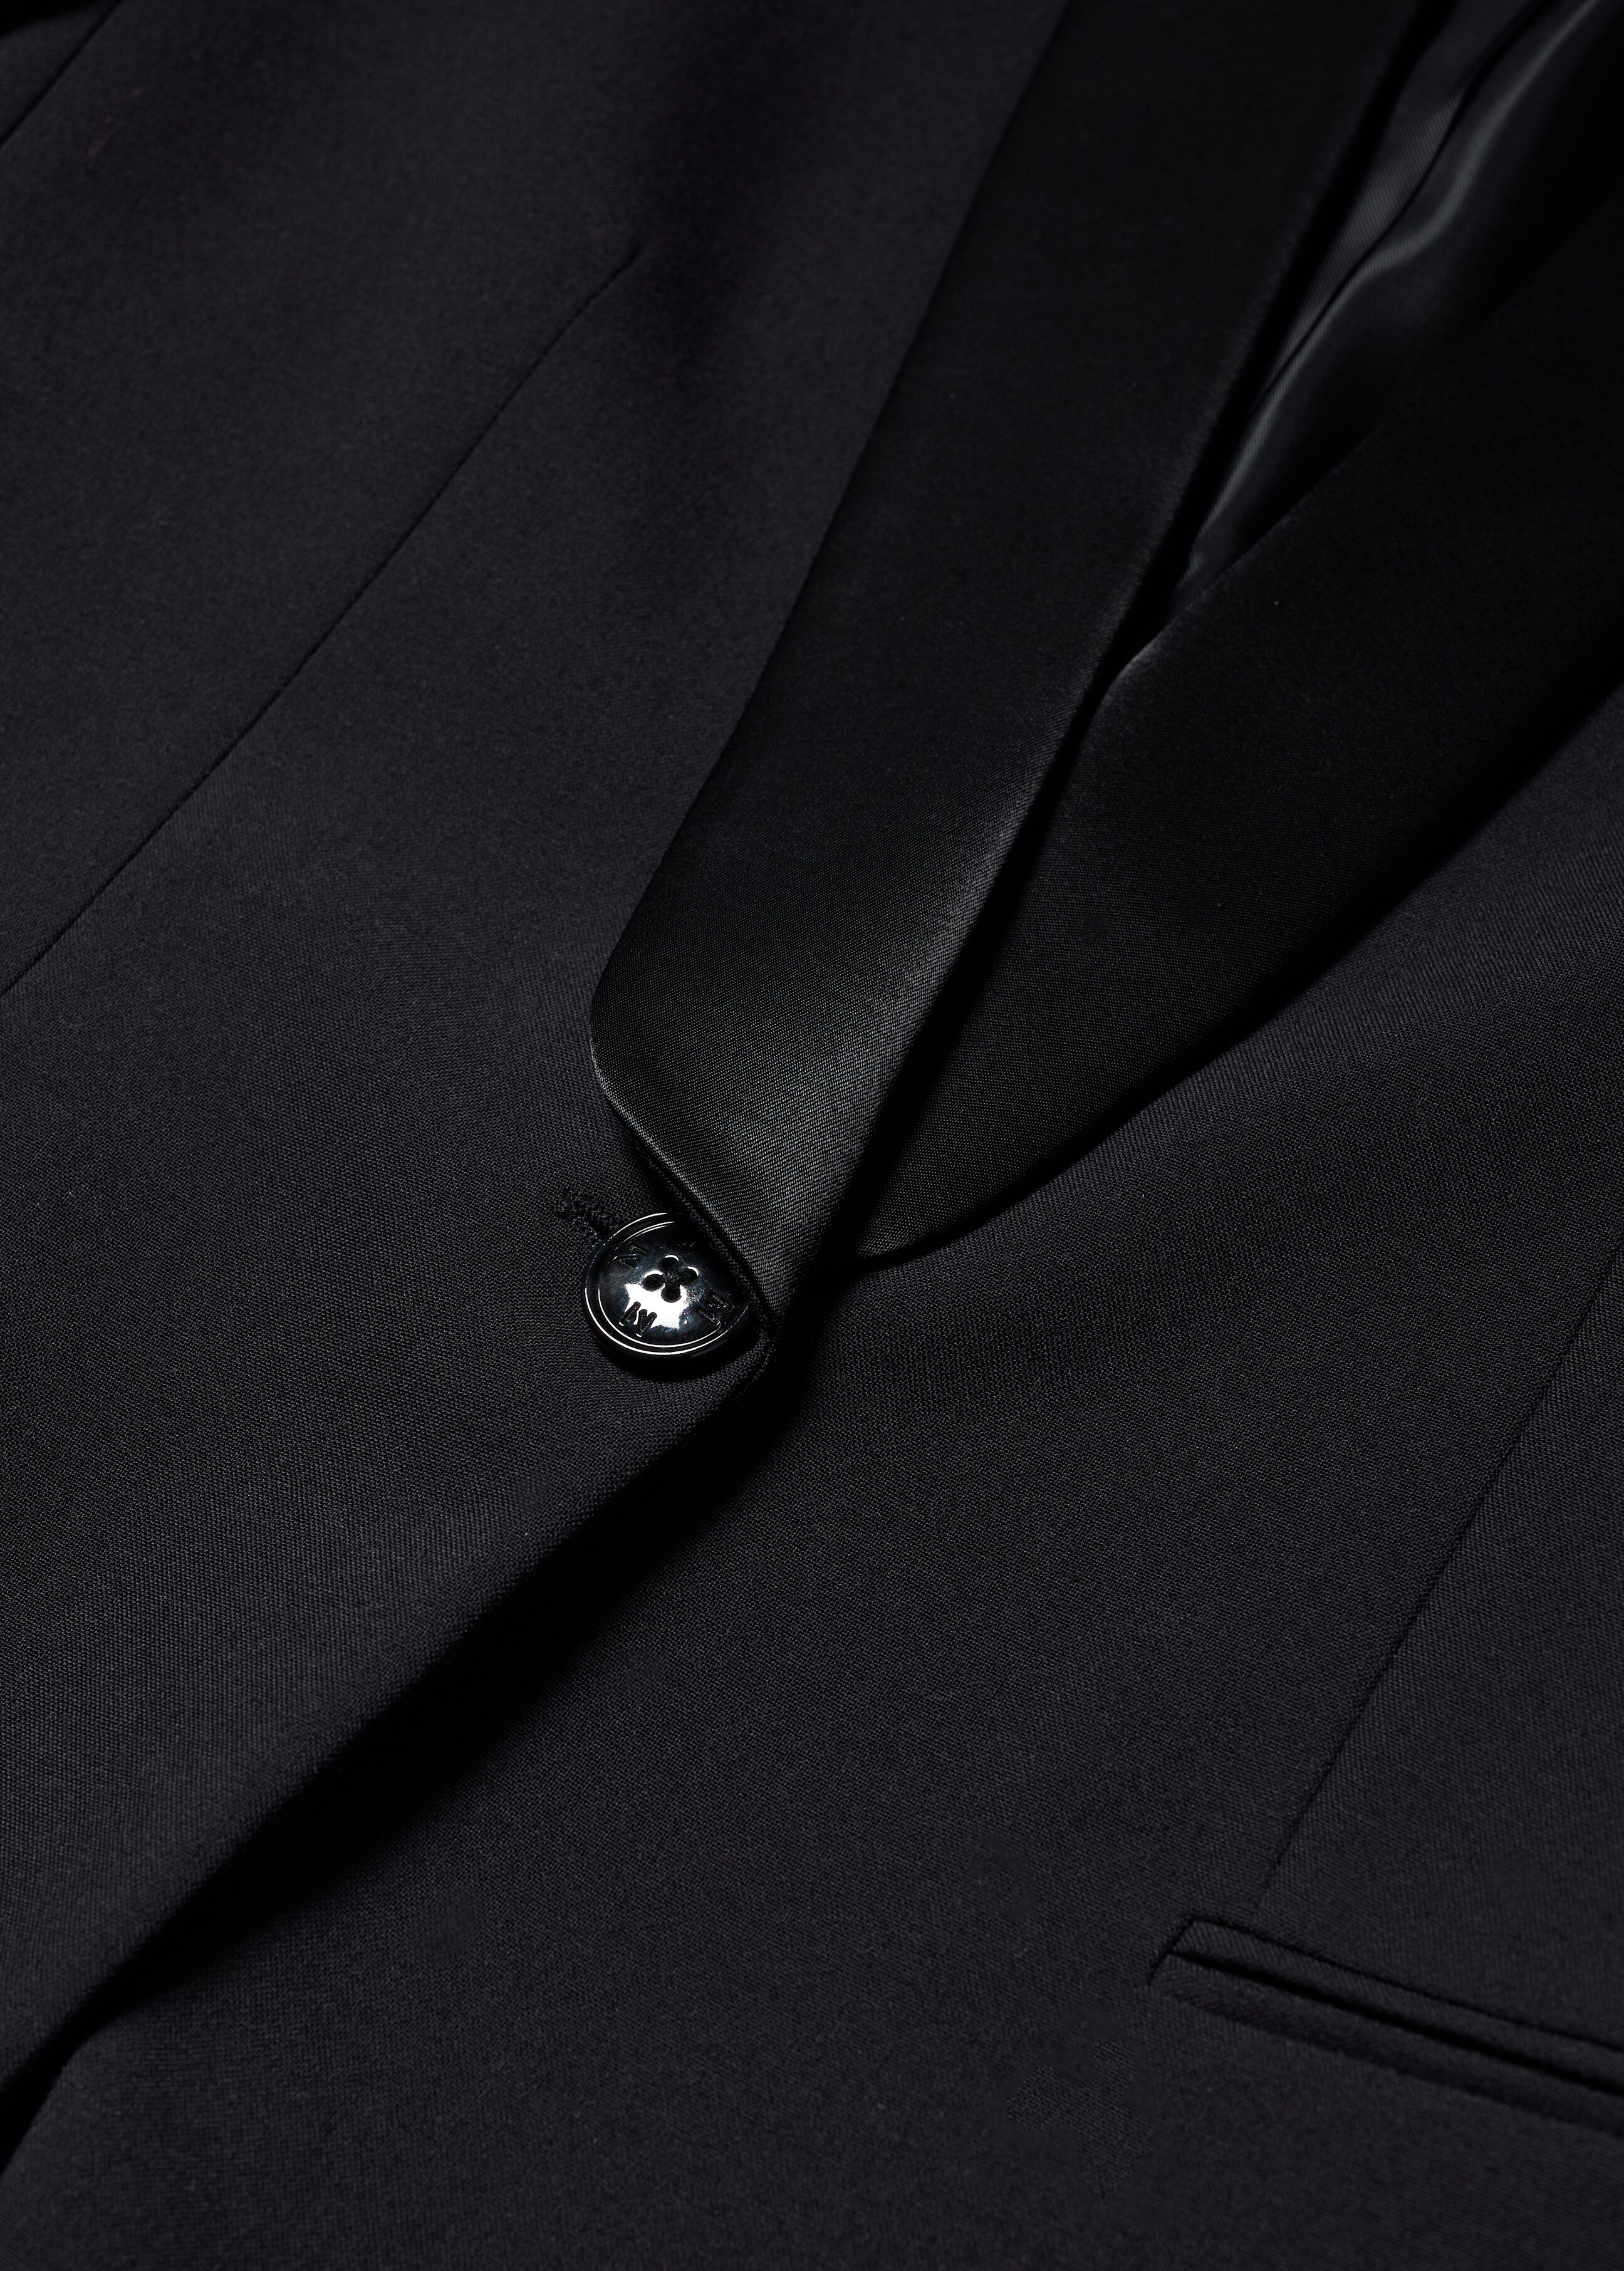 Satin lapels suit blazer - Details of the article 8